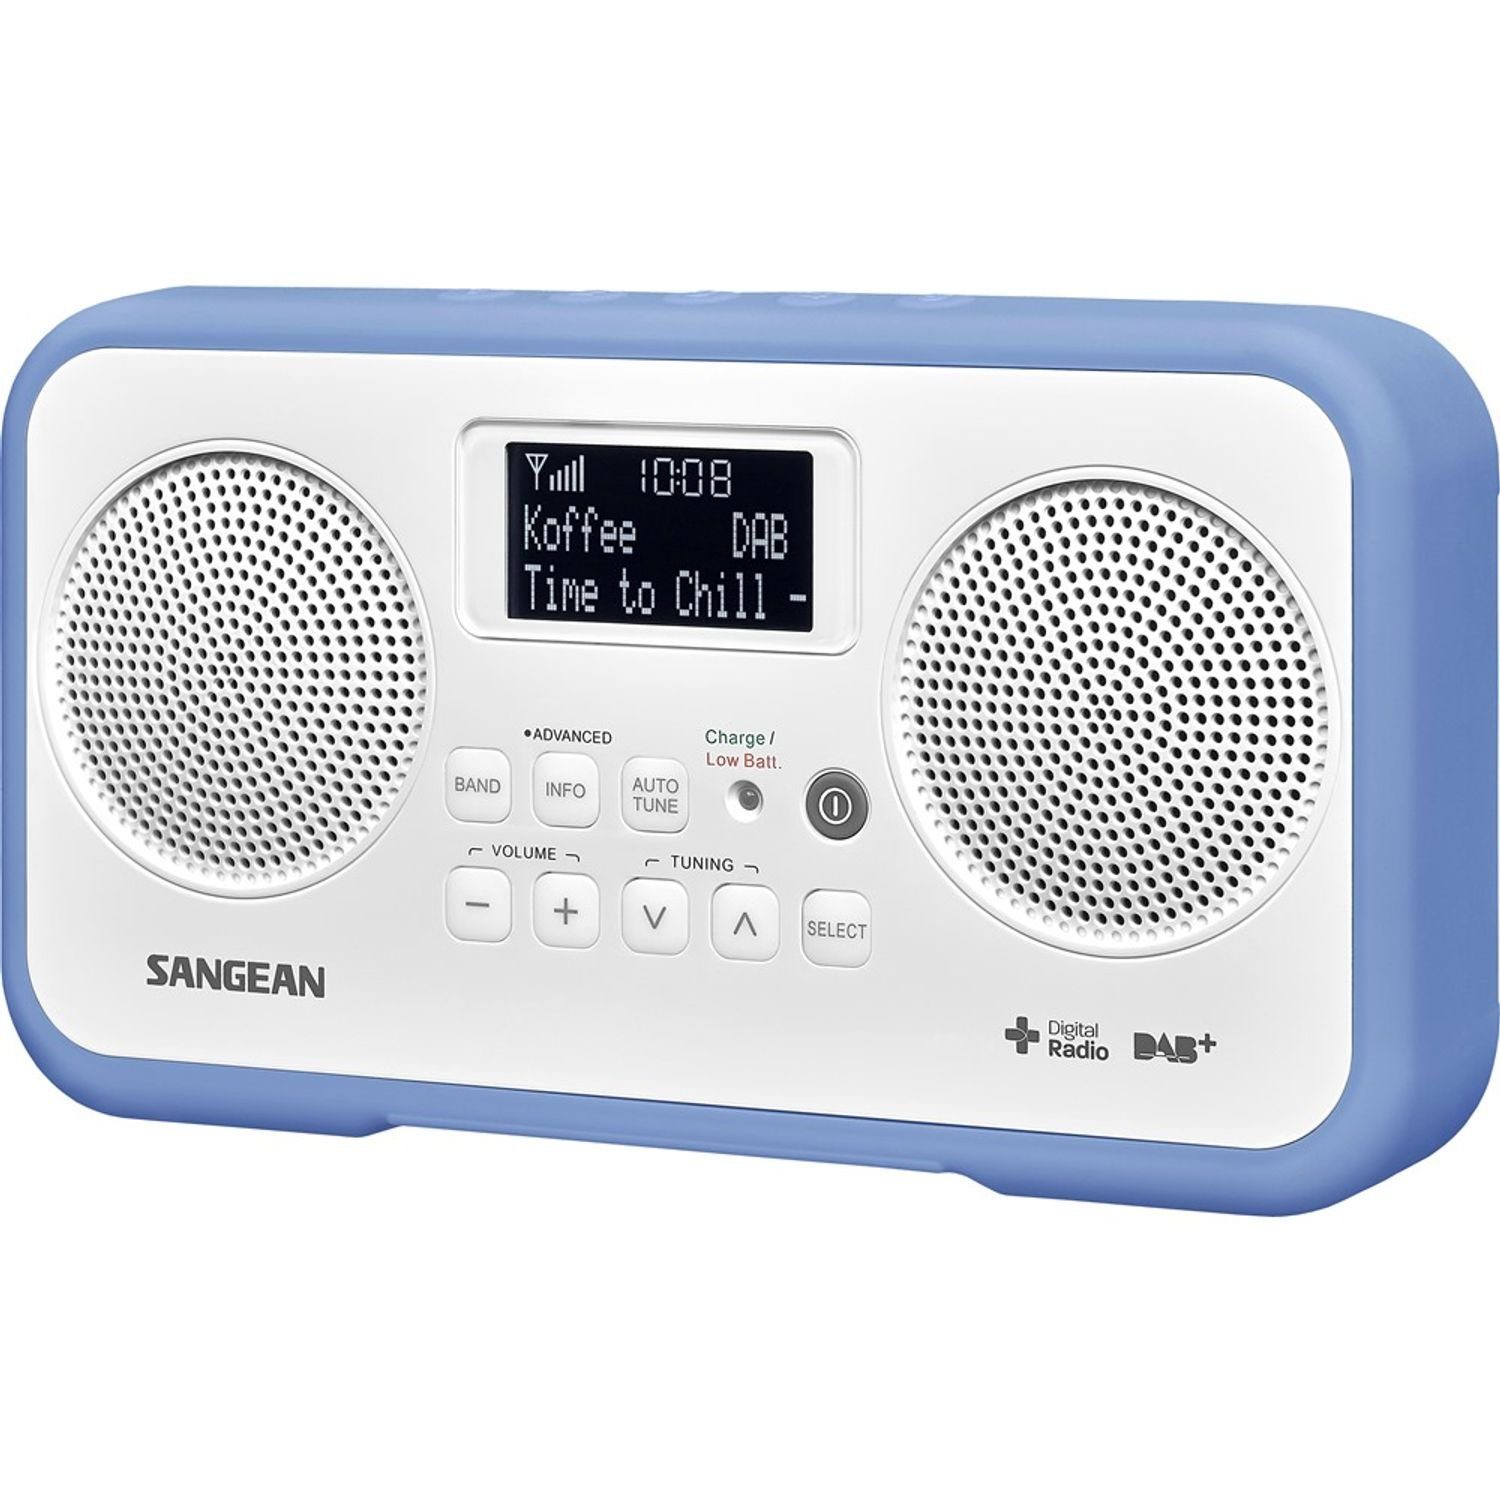 (DAB) DPR-77 Digitalradio Sangean digitaler (DAB) DAB+ Stereo-Empfänger weiß/blau